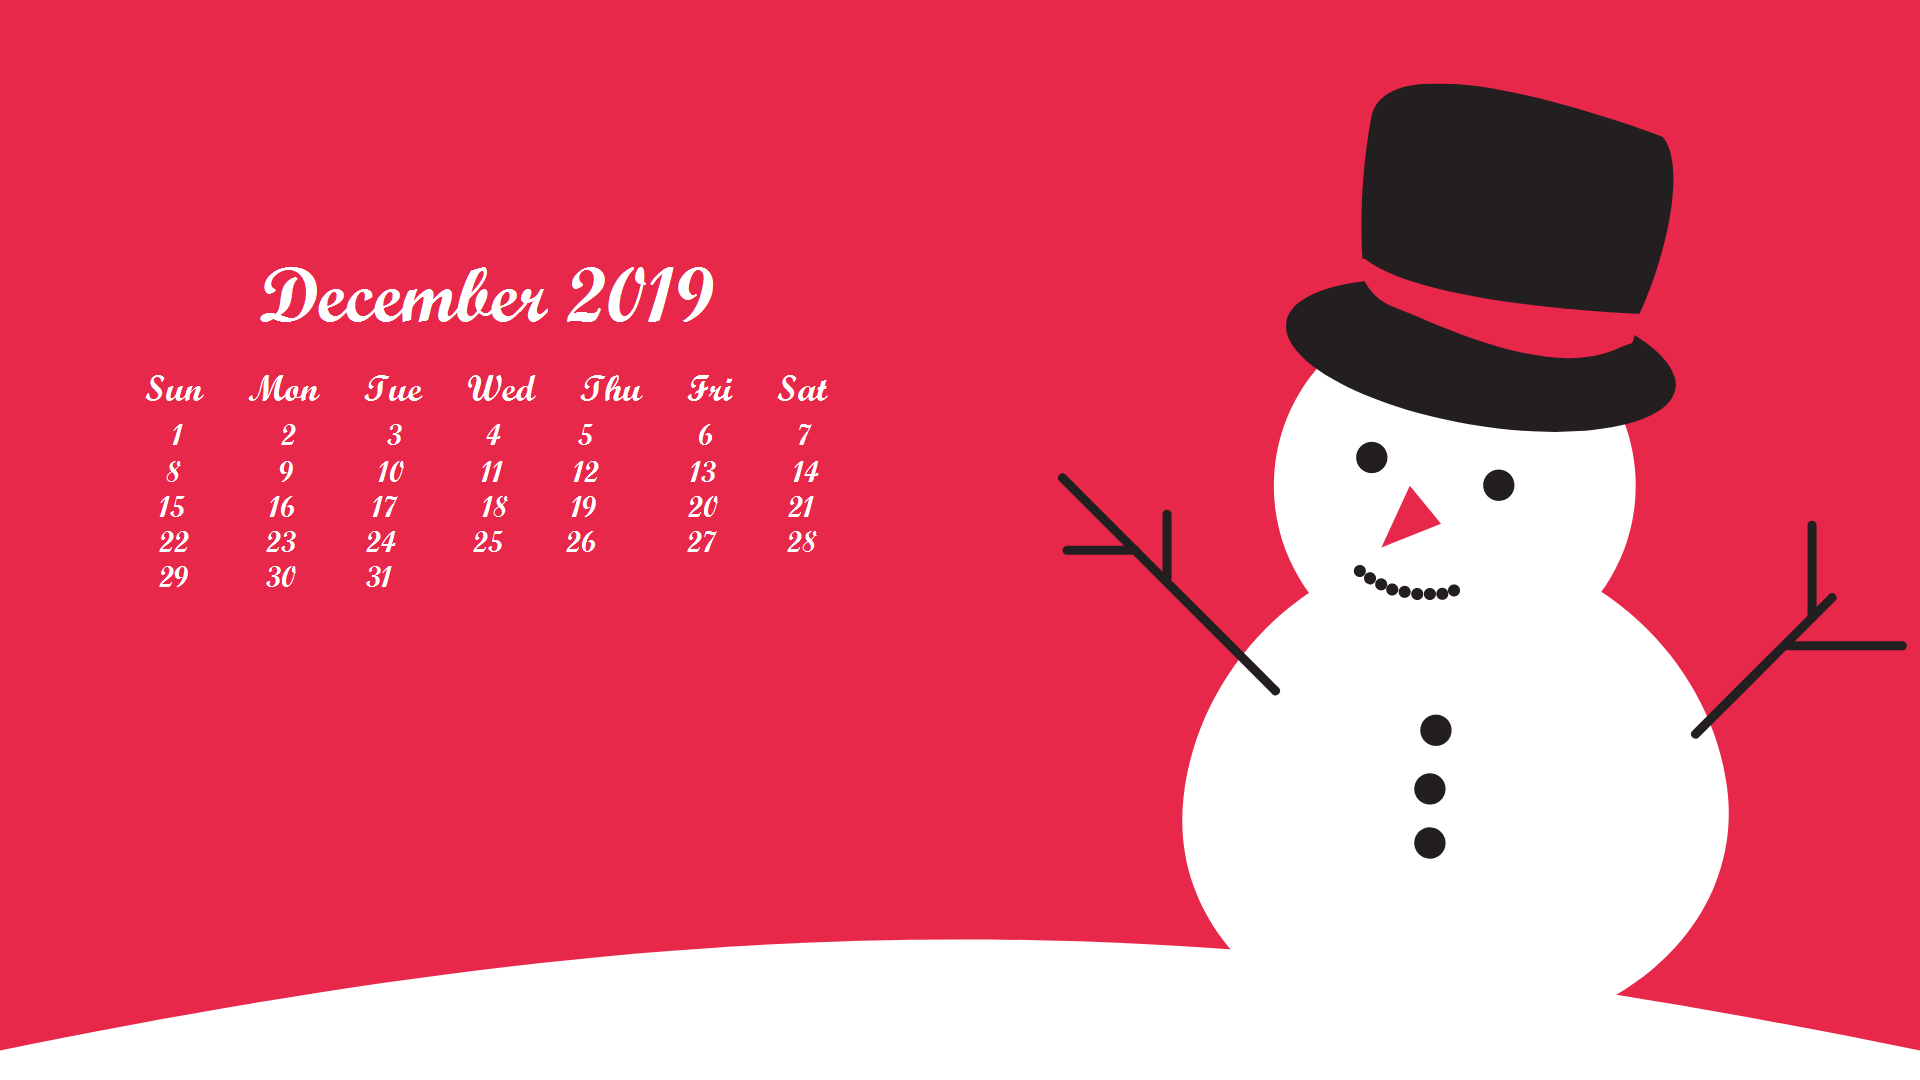 December 2019 Desktop Wallpaper With Calendar